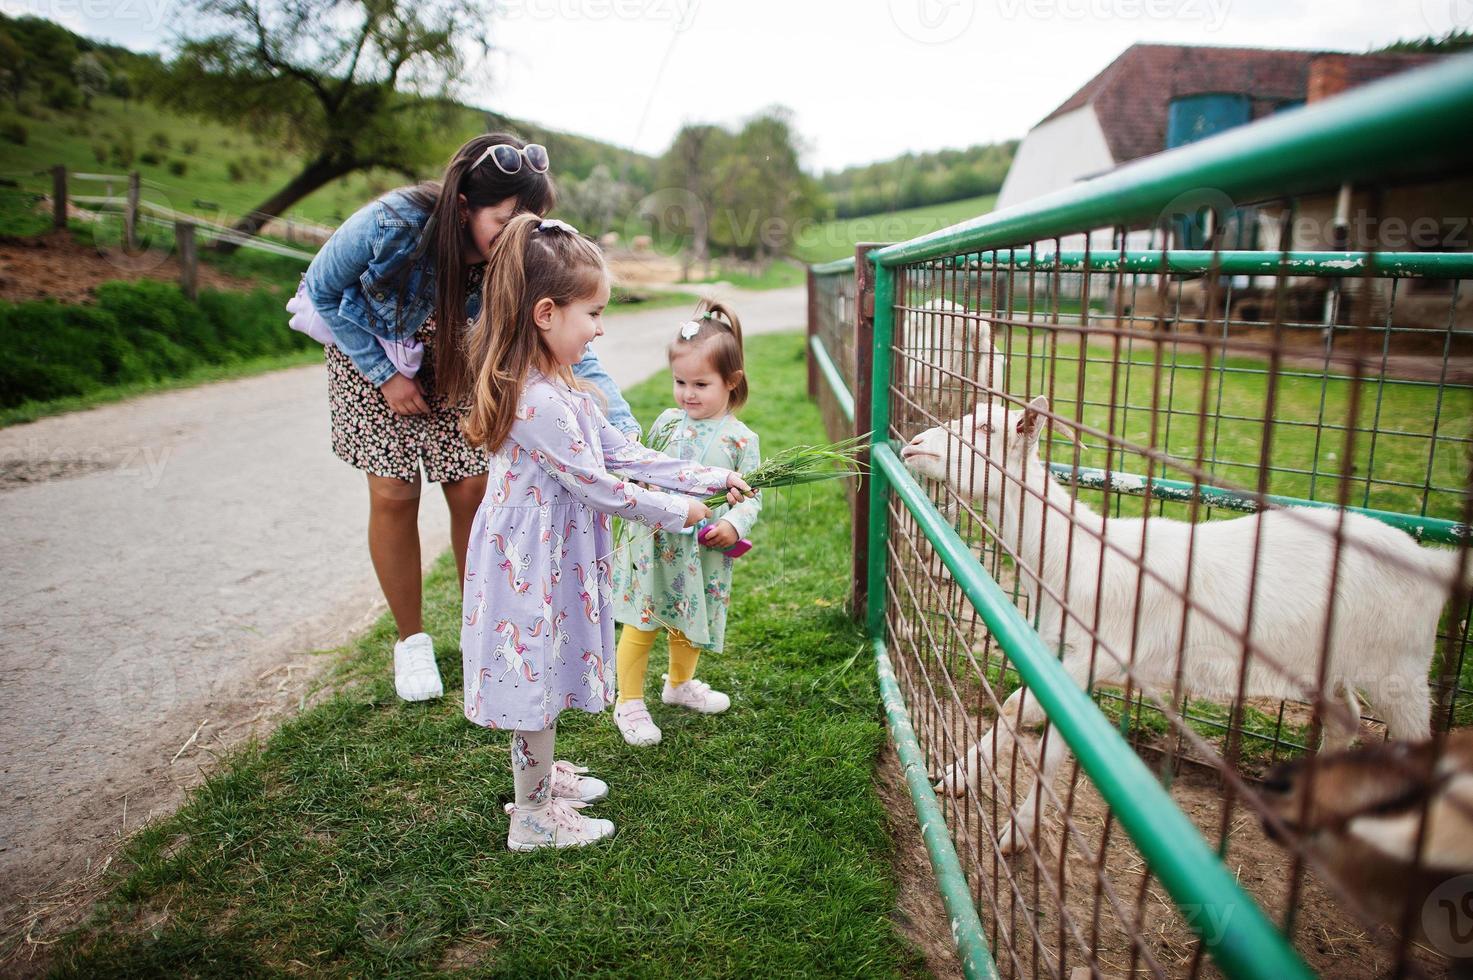 mère avec enfants sur une ferme écologique animale nourrit des chèvres. photo